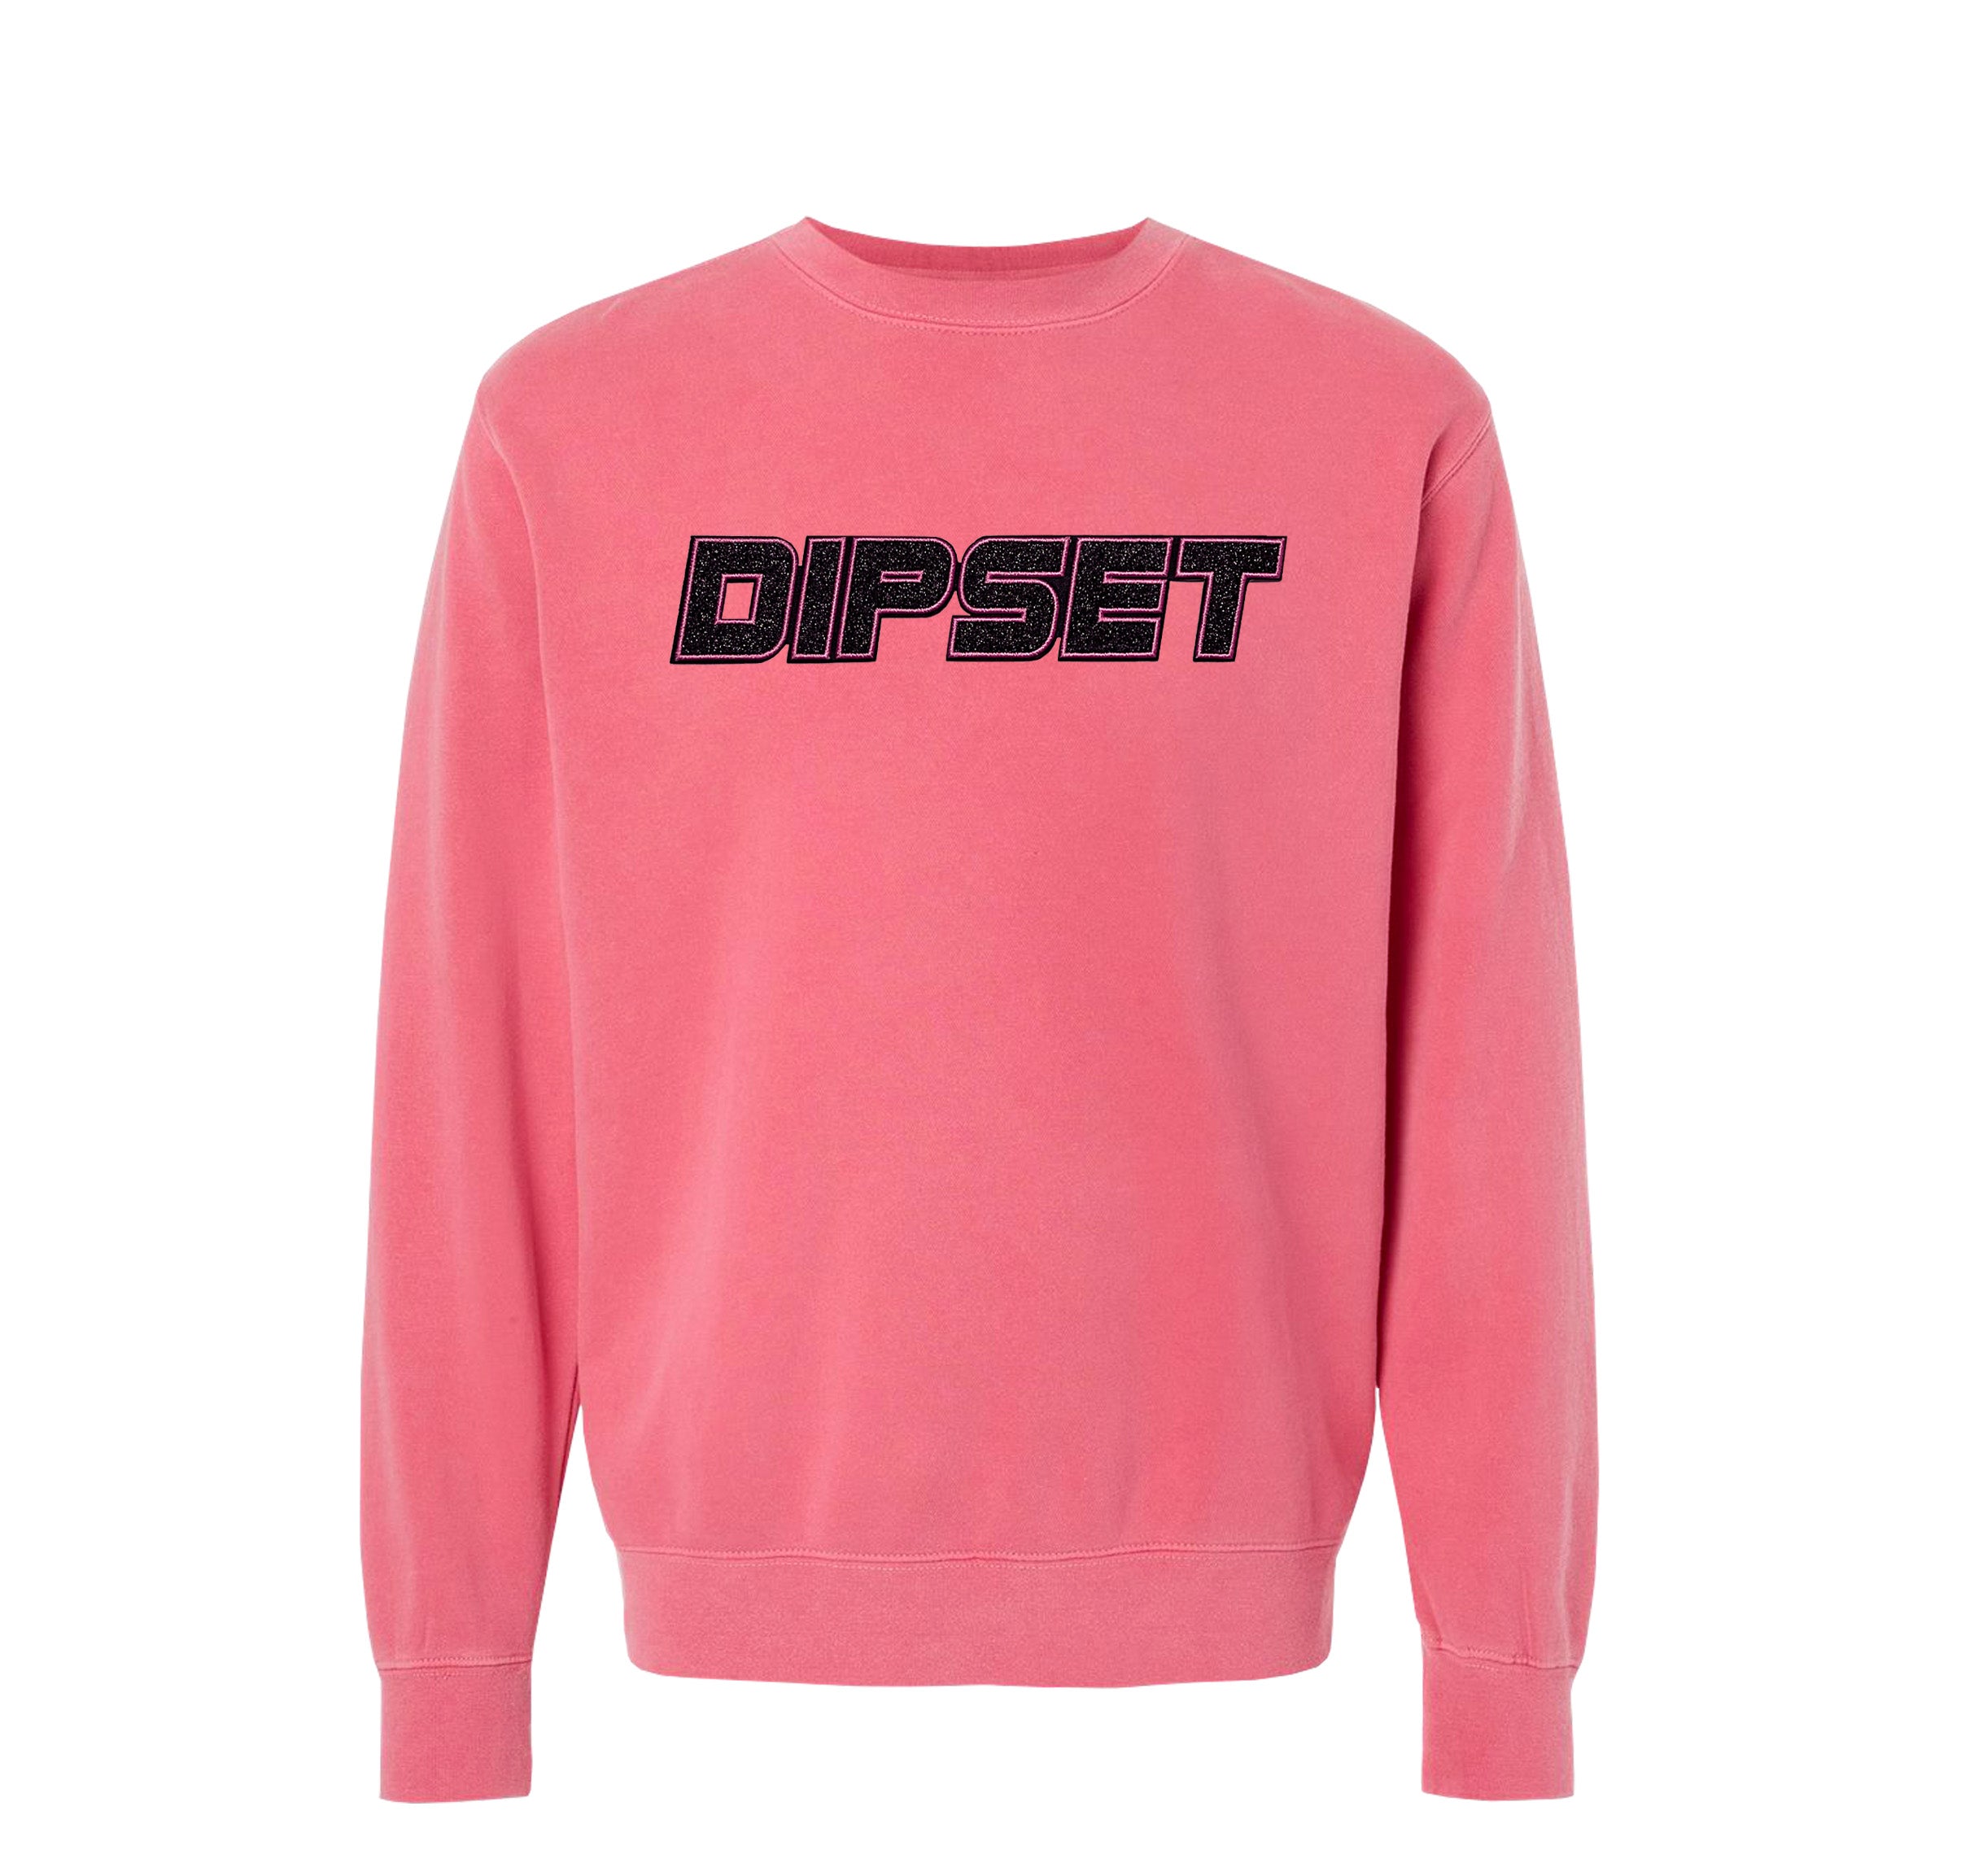 Vintage Washed Pink Glitter Crewneck Sweater